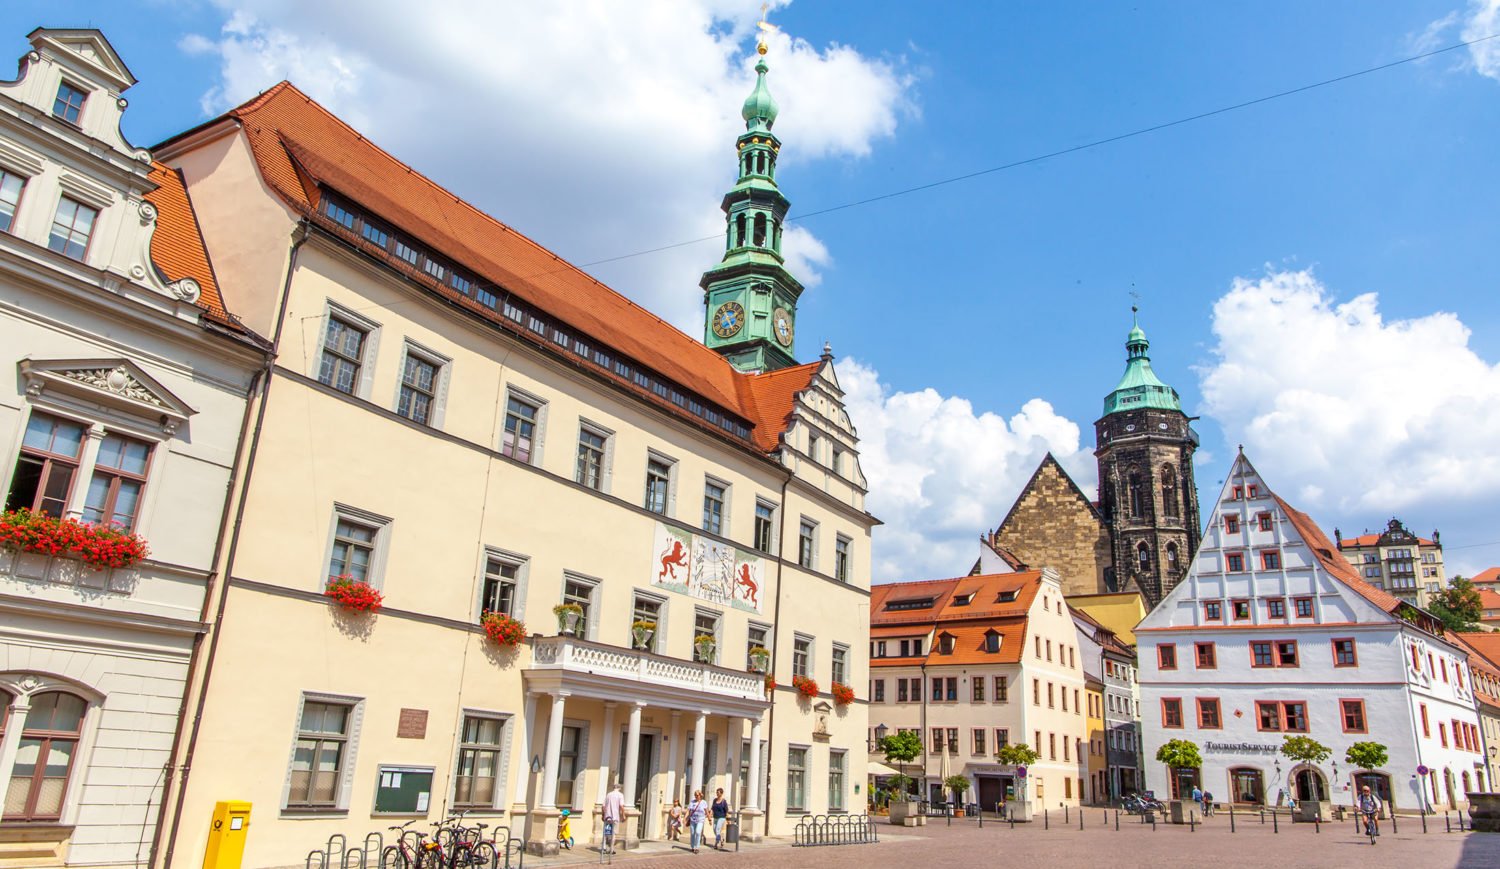 Das Rathaus, die evangelische Stadtkirche St. Marien und das Canalettohaus – um den Marktplatz von Pirna gruppieren sich einige der wichtigsten Sehenswürdigkeiten der Stadt